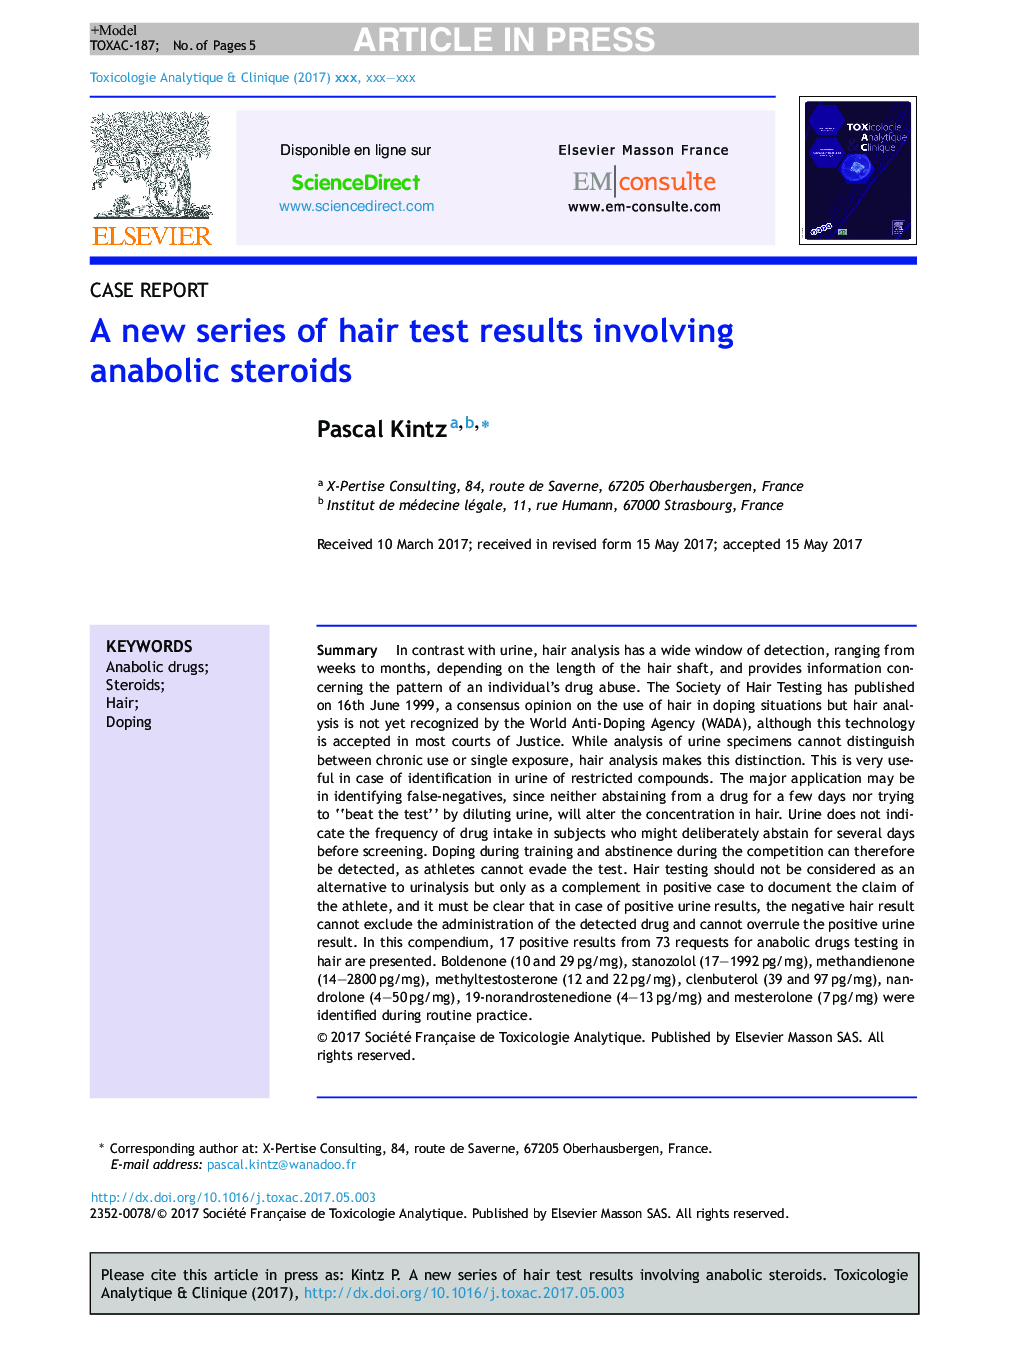 یک سری جدید از نتایج آزمایش موهای مربوط به استروئیدهای آنابولیک 